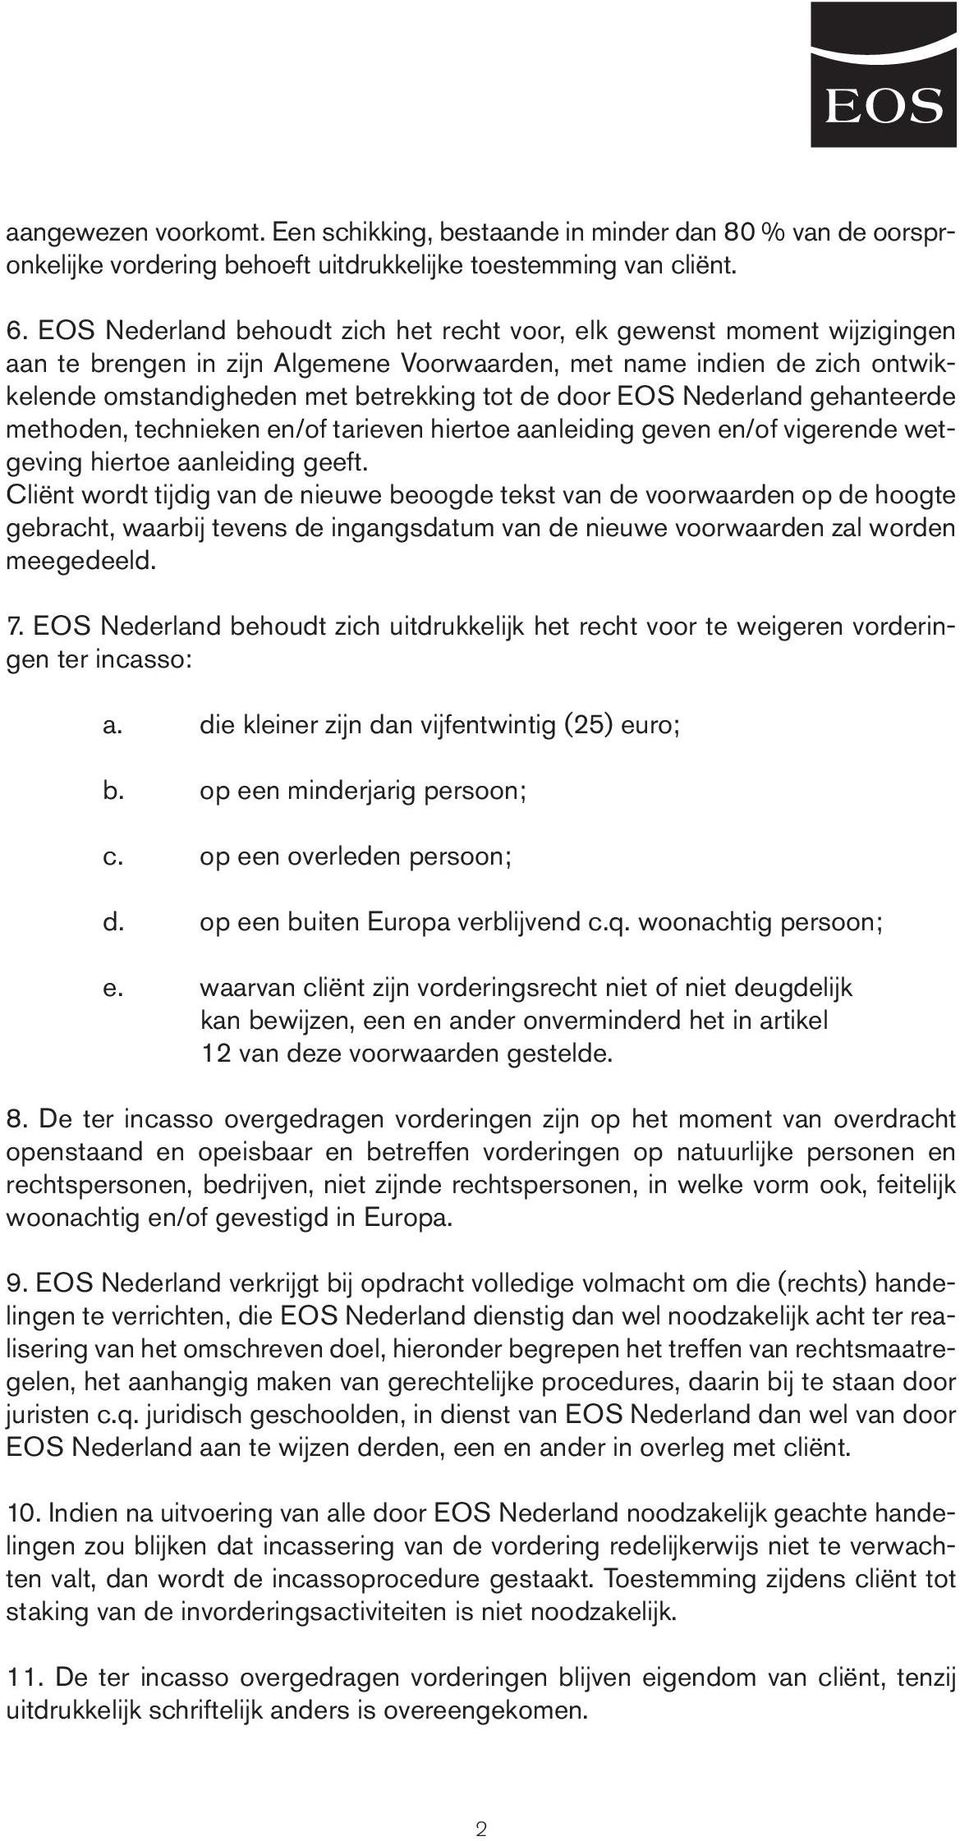 EOS Nederland gehanteerde methoden, technieken en/of tarieven hiertoe aanleiding geven en/of vigerende wetgeving hiertoe aanleiding geeft.